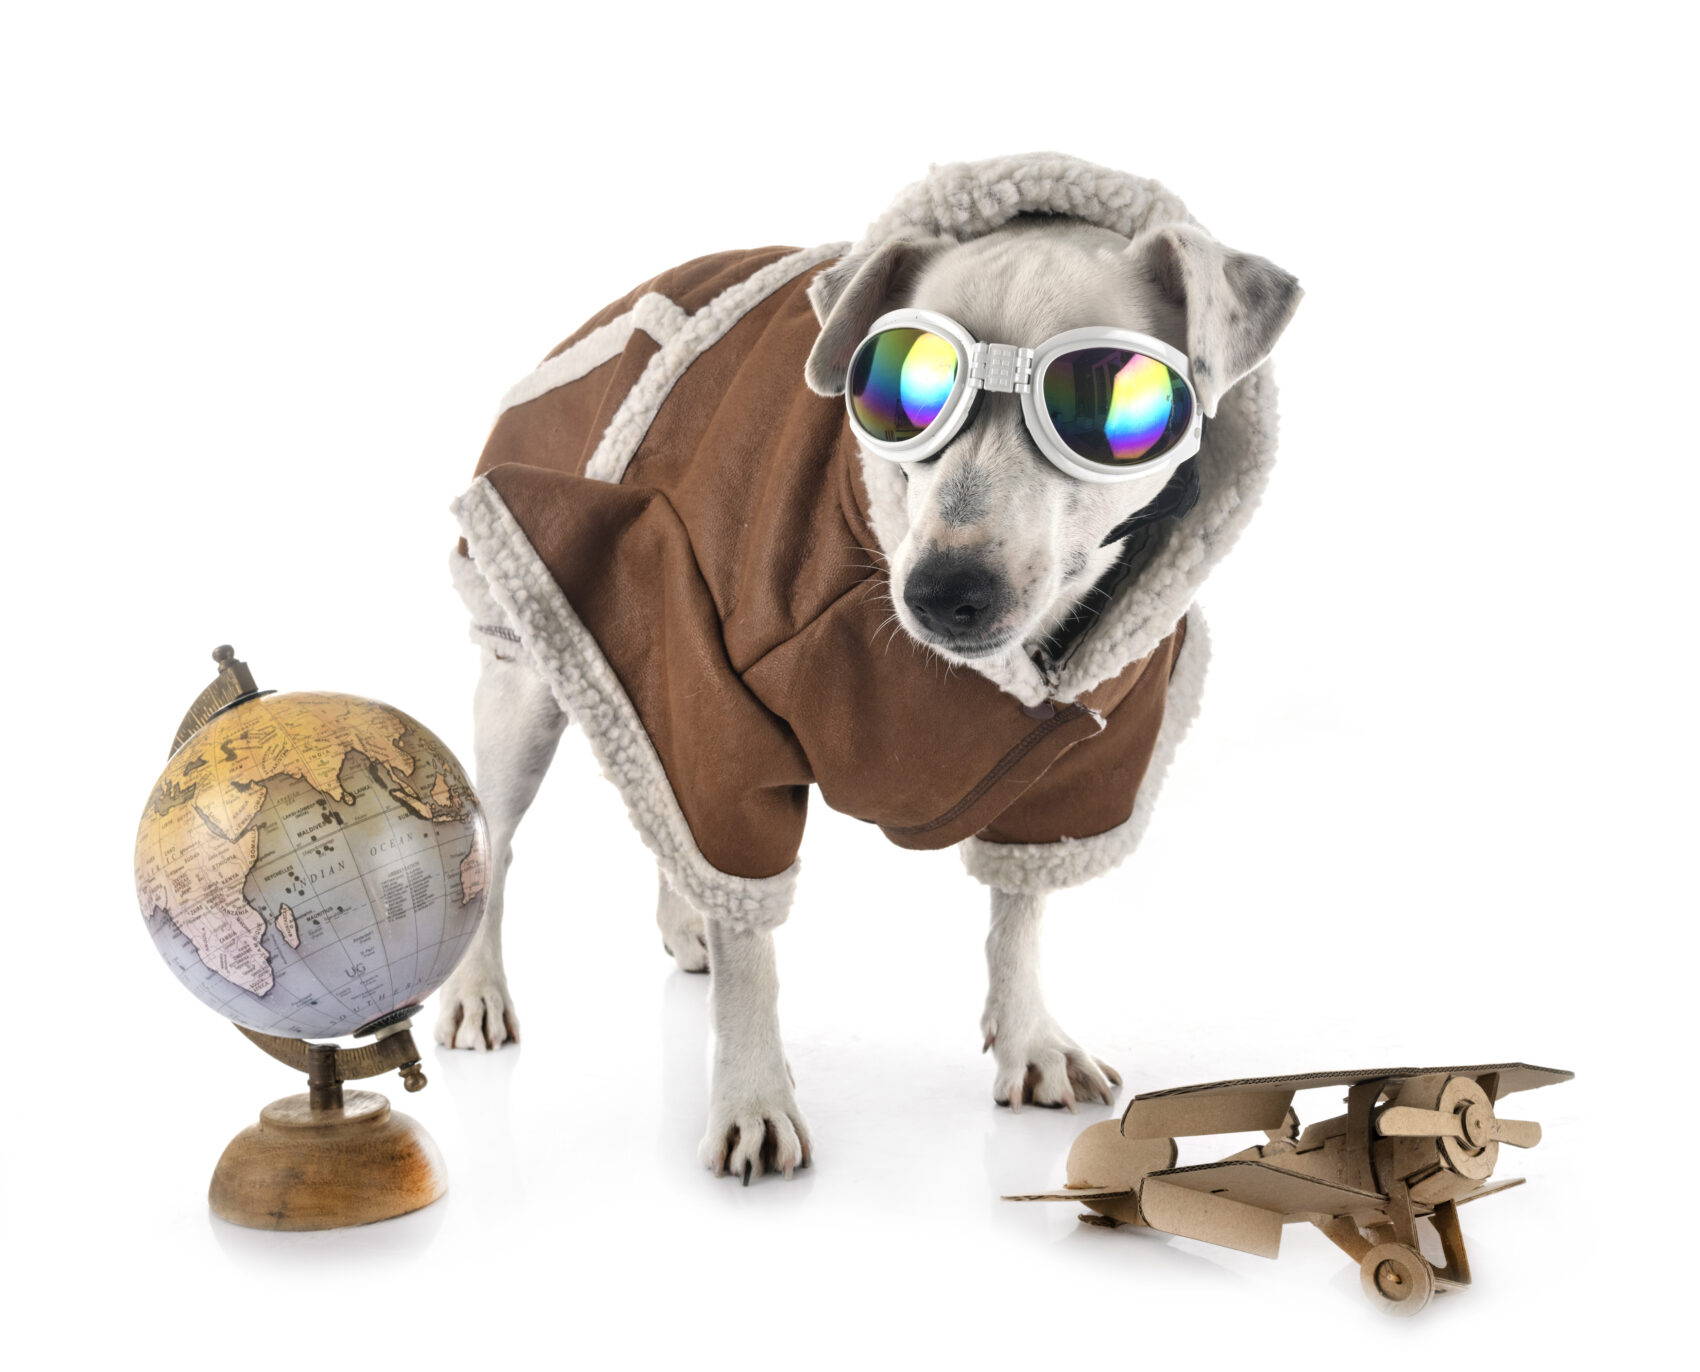 Perro con chaqueta de aviador junto a una avioneta de juguete y una bola del mundo